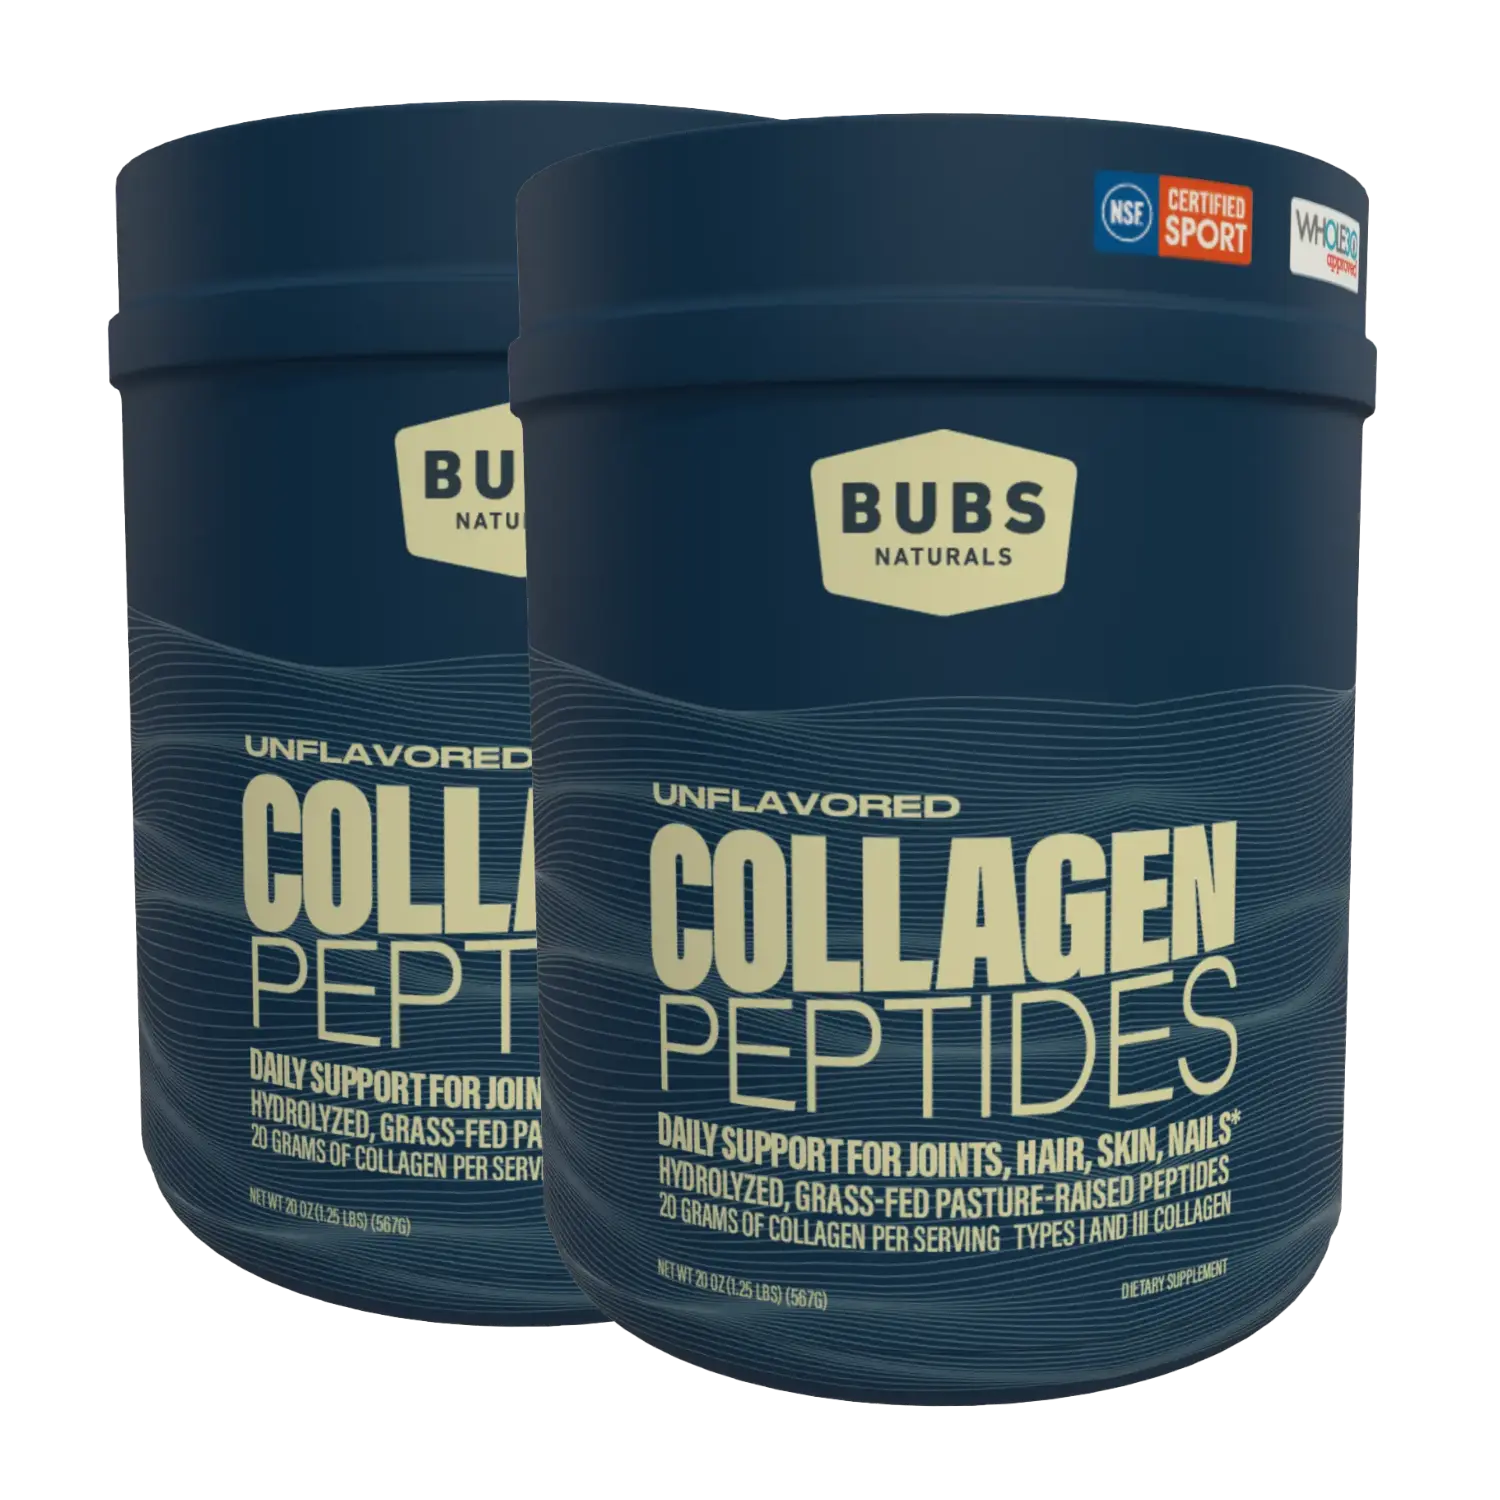 BUBS Naturals Unflavored Collagen Peptides, 20oz, 2 tub bundle